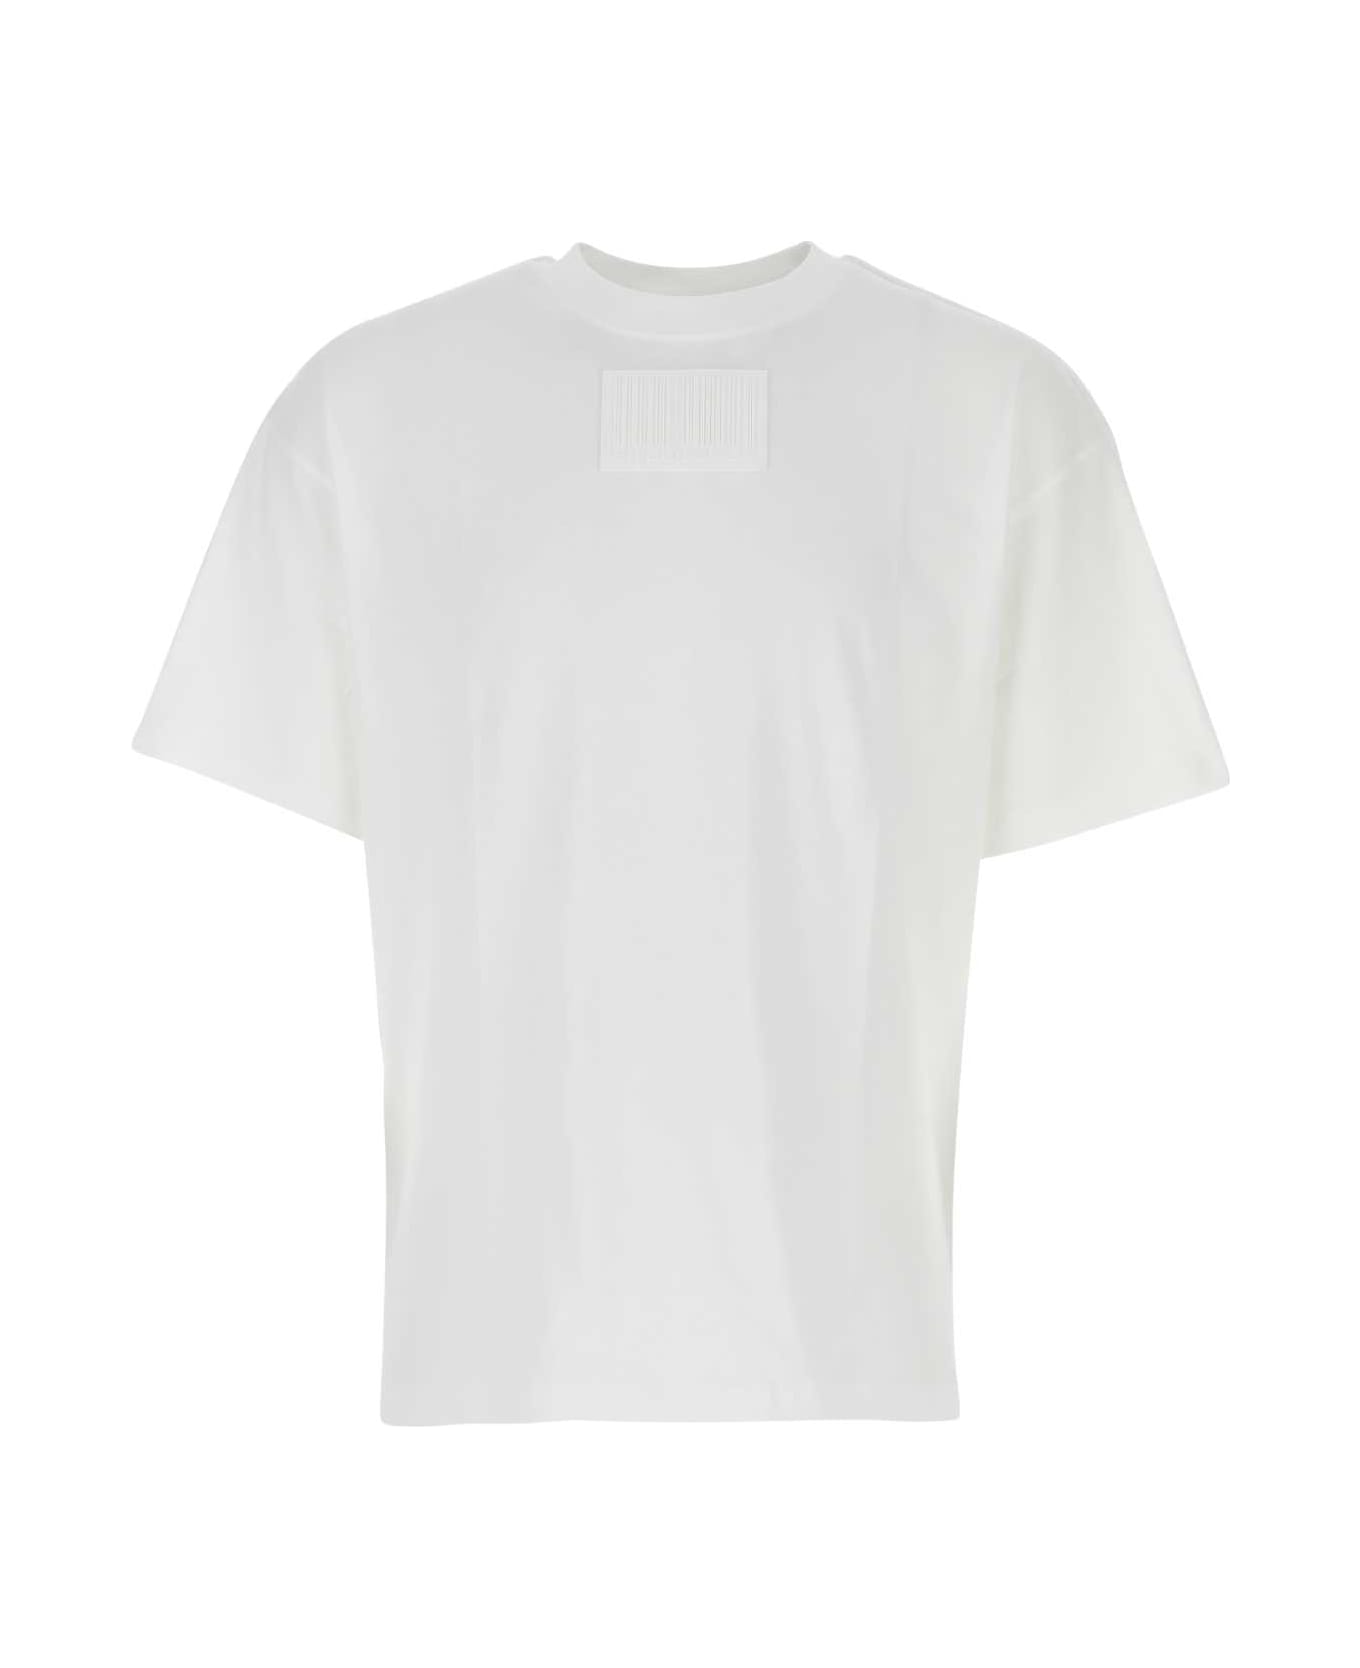 VTMNTS White Cotton T-shirt - WHITE